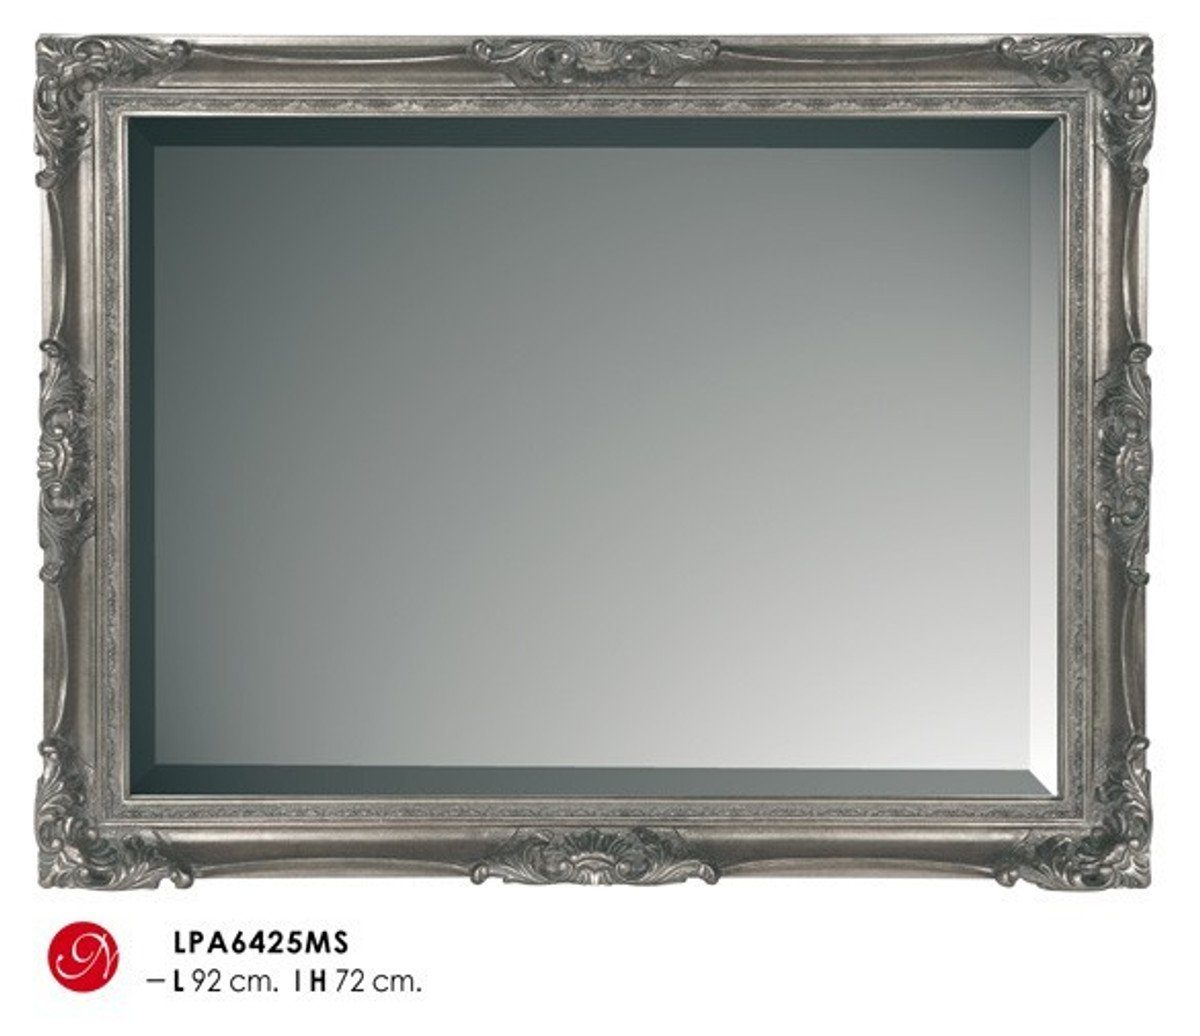 Casa Padrino Barockspiegel Barock Wandspiegel Silber H 92 cm B 72 cm - Edel & Prunkvoll - Spiegel Silberfarben | Barock-Spiegel